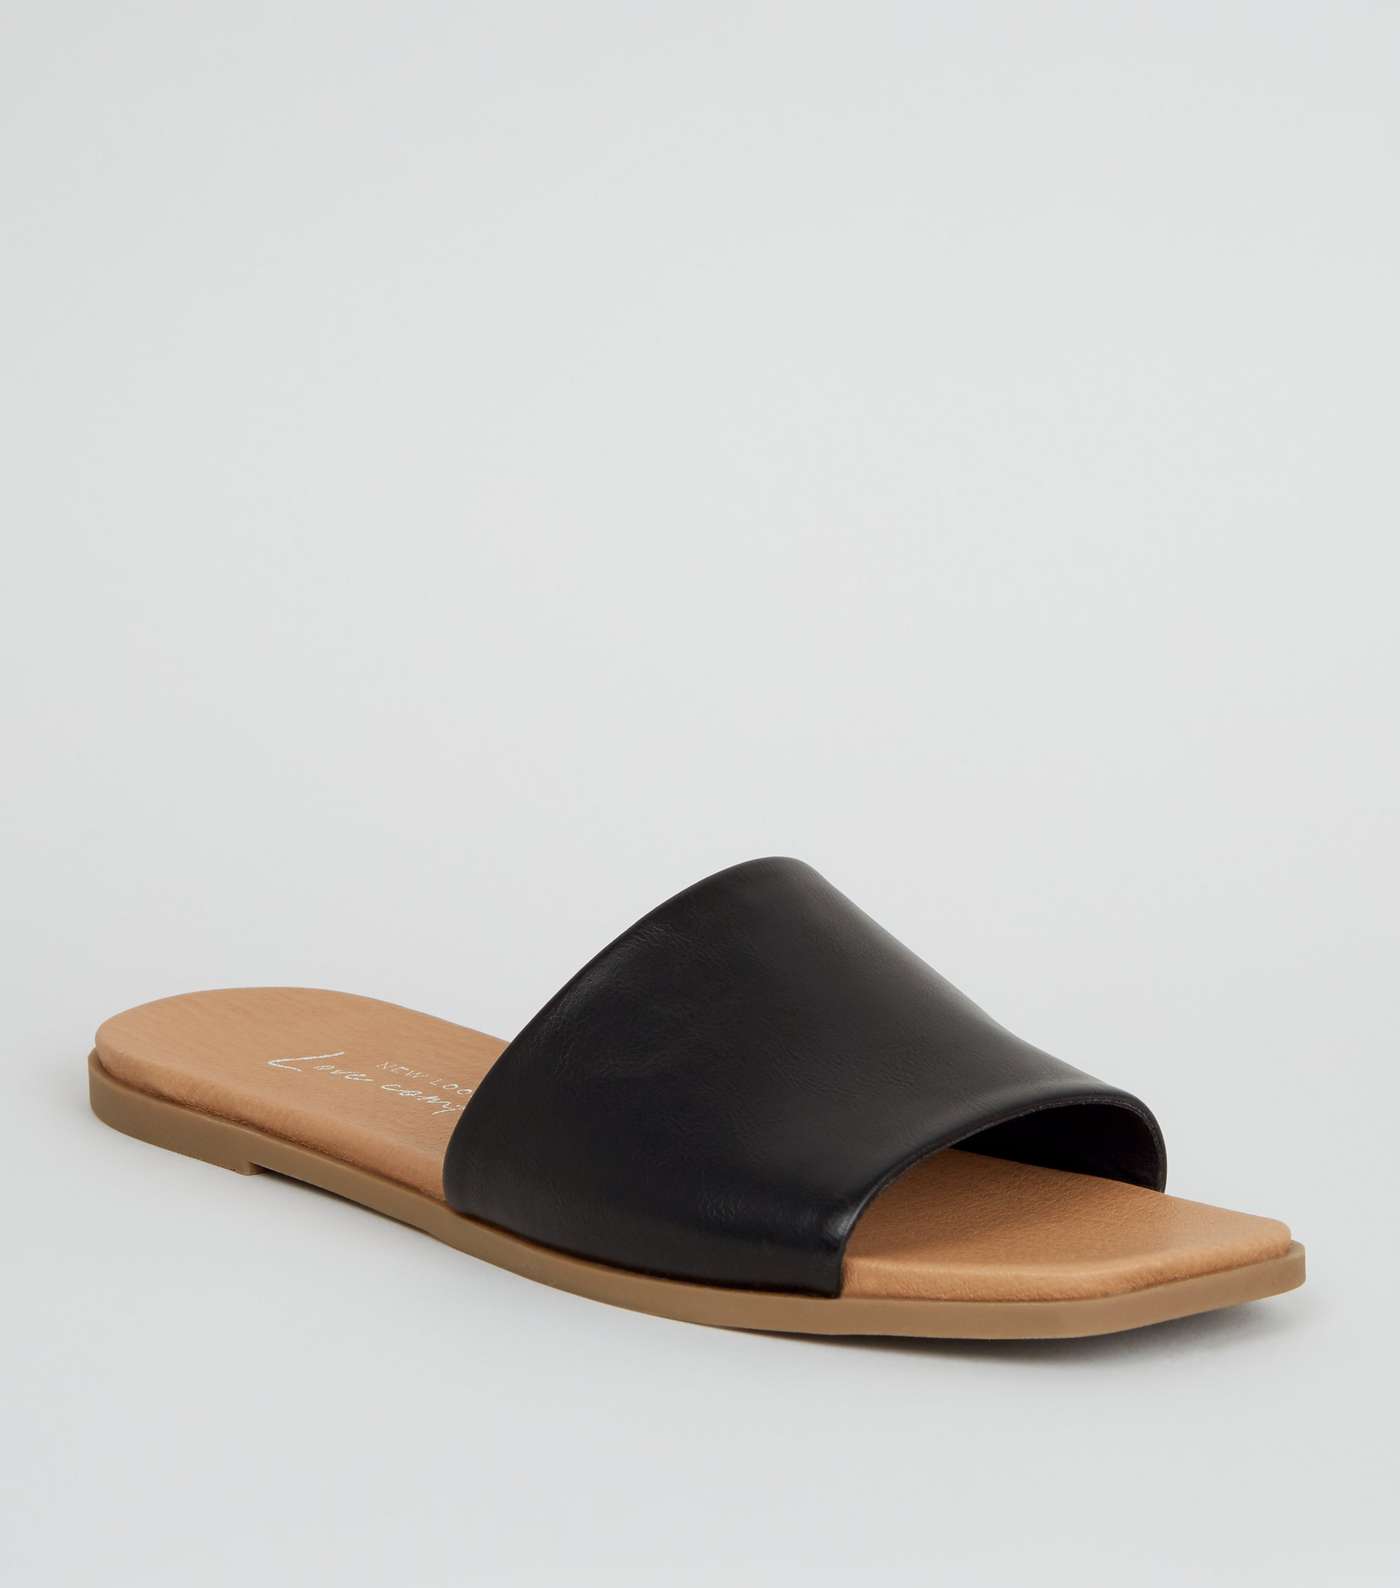 Black Leather-Look Square Toe Sliders